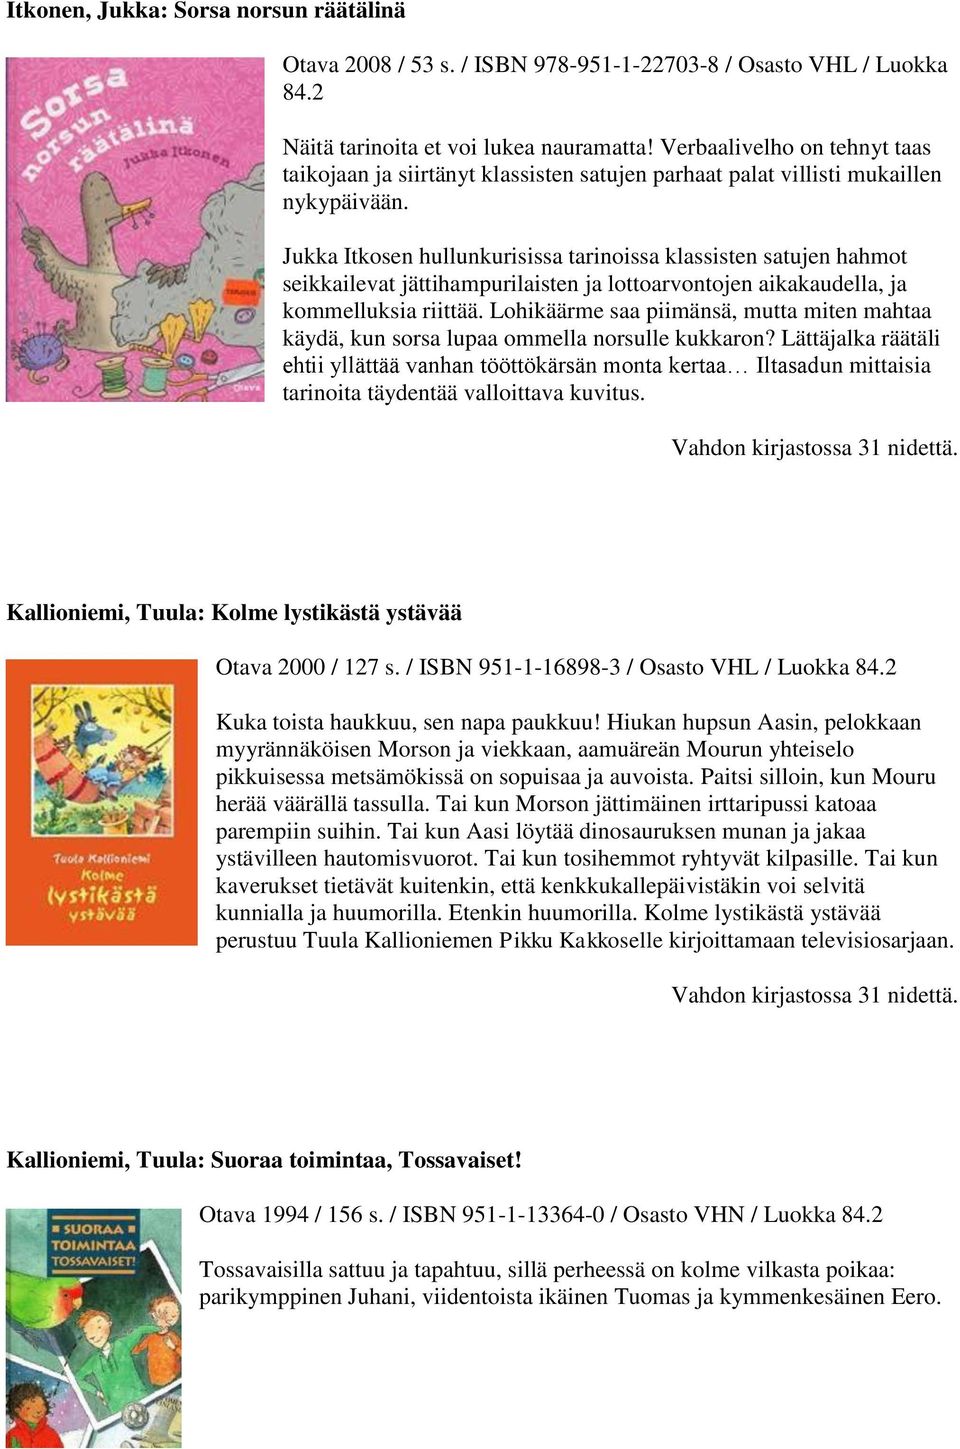 Jukka Itkosen hullunkurisissa tarinoissa klassisten satujen hahmot seikkailevat jättihampurilaisten ja lottoarvontojen aikakaudella, ja kommelluksia riittää.